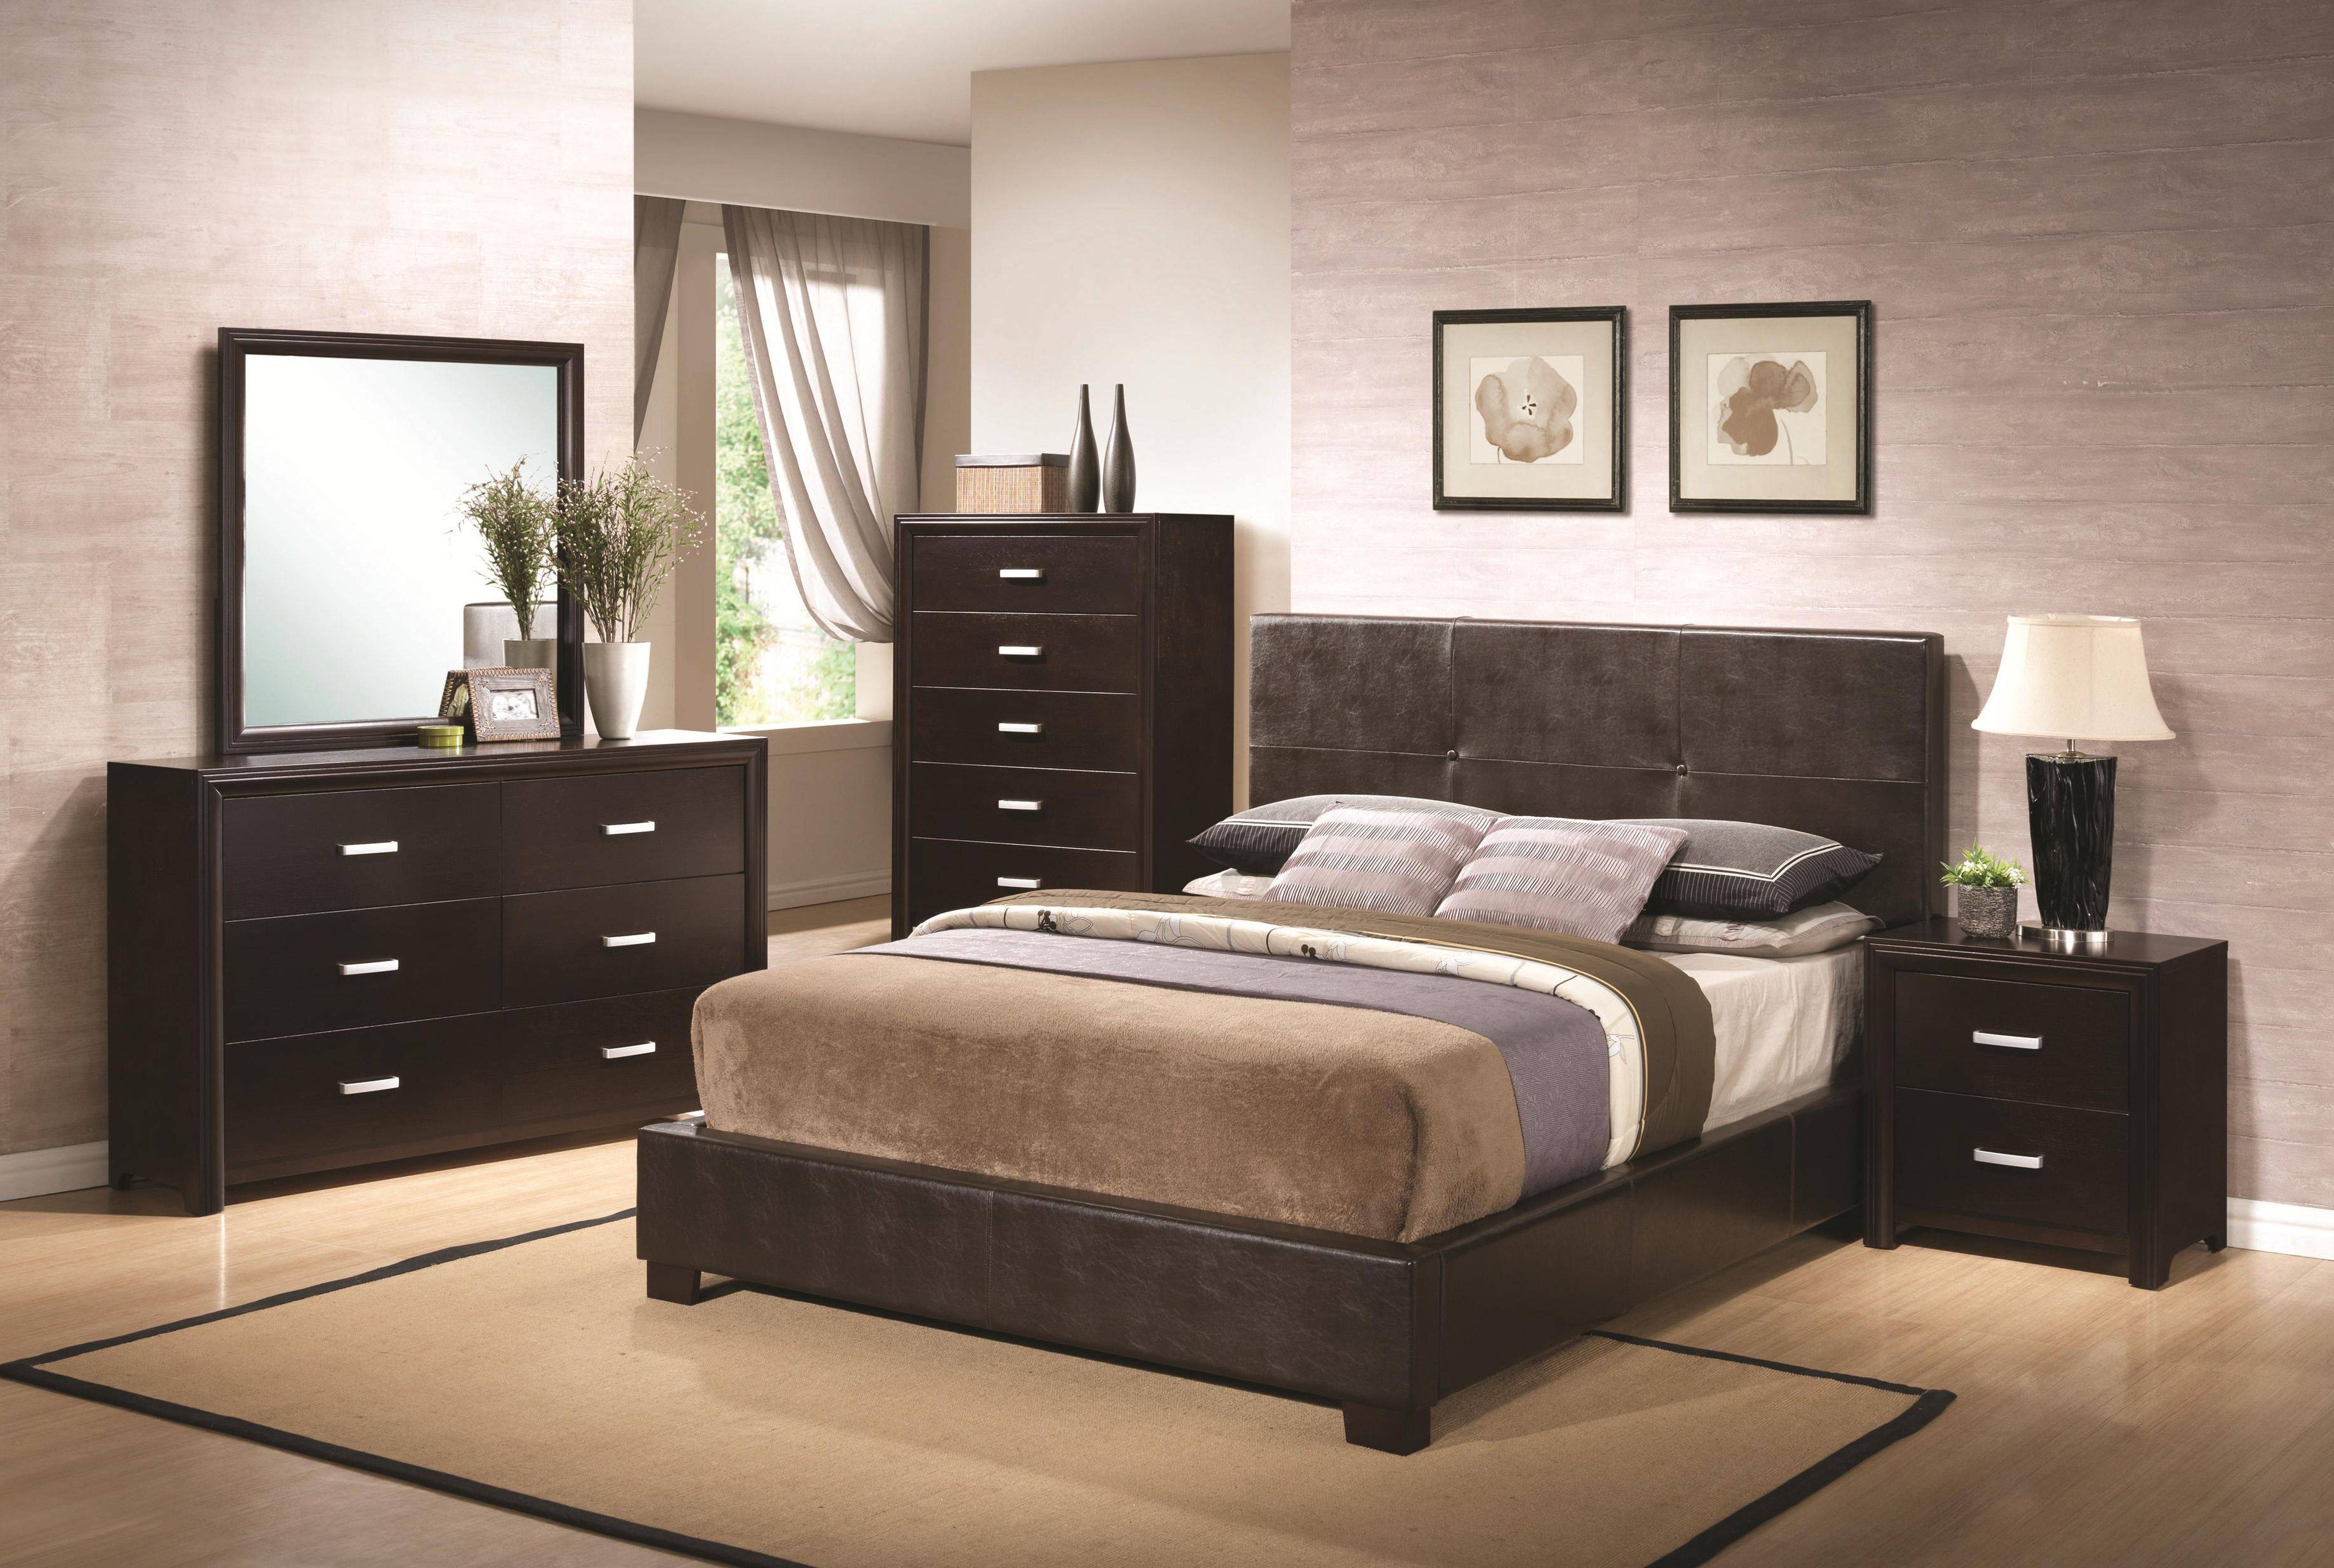 men's bedroom furniture